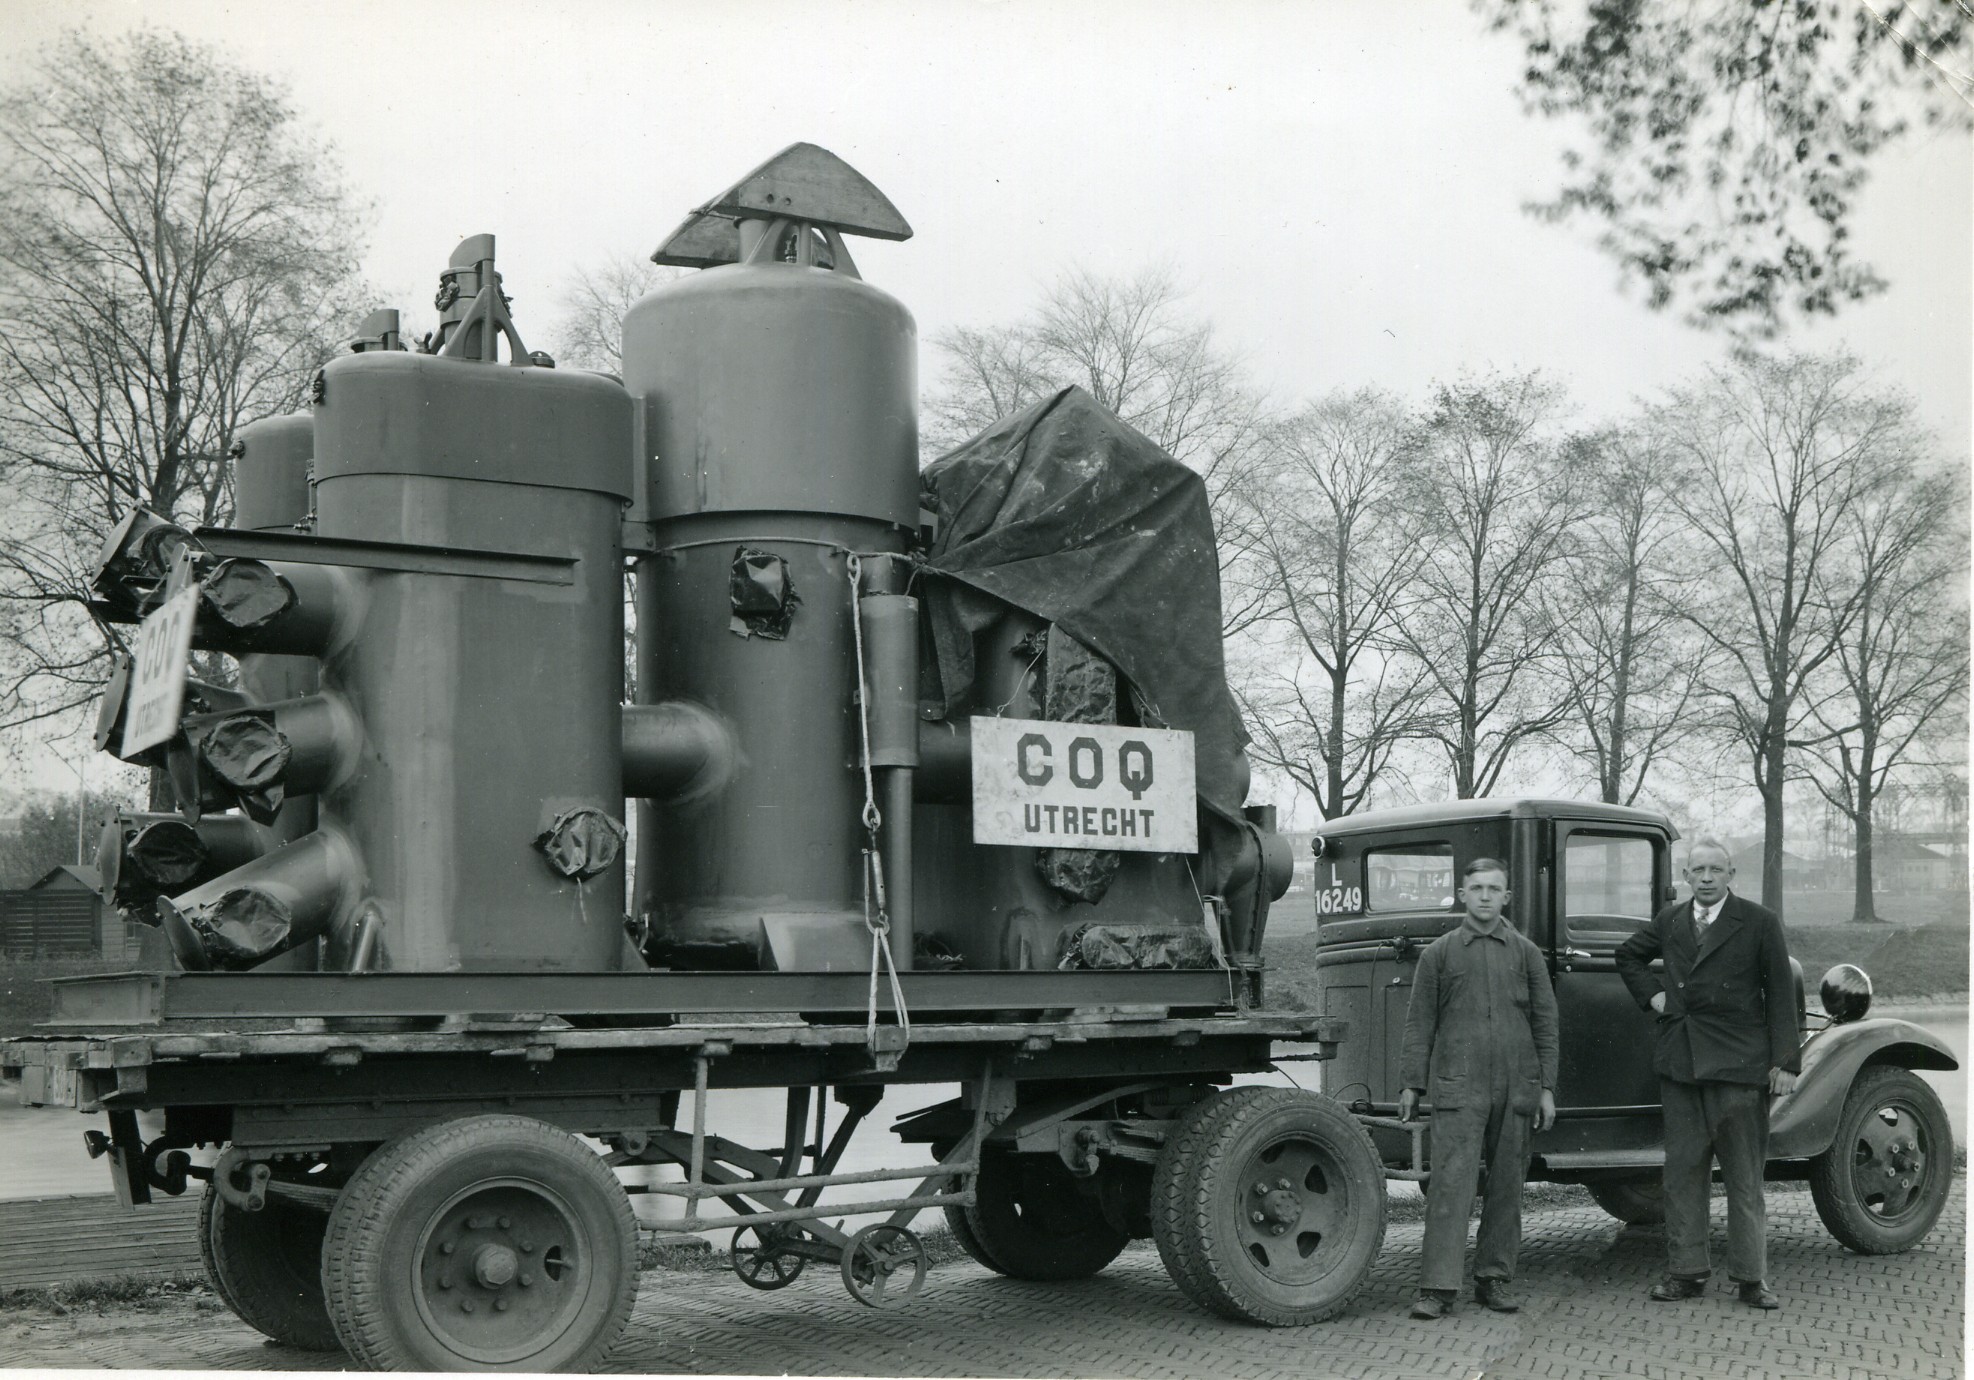 Prachtige foto vervoer van een Coq installatie 1930-1940